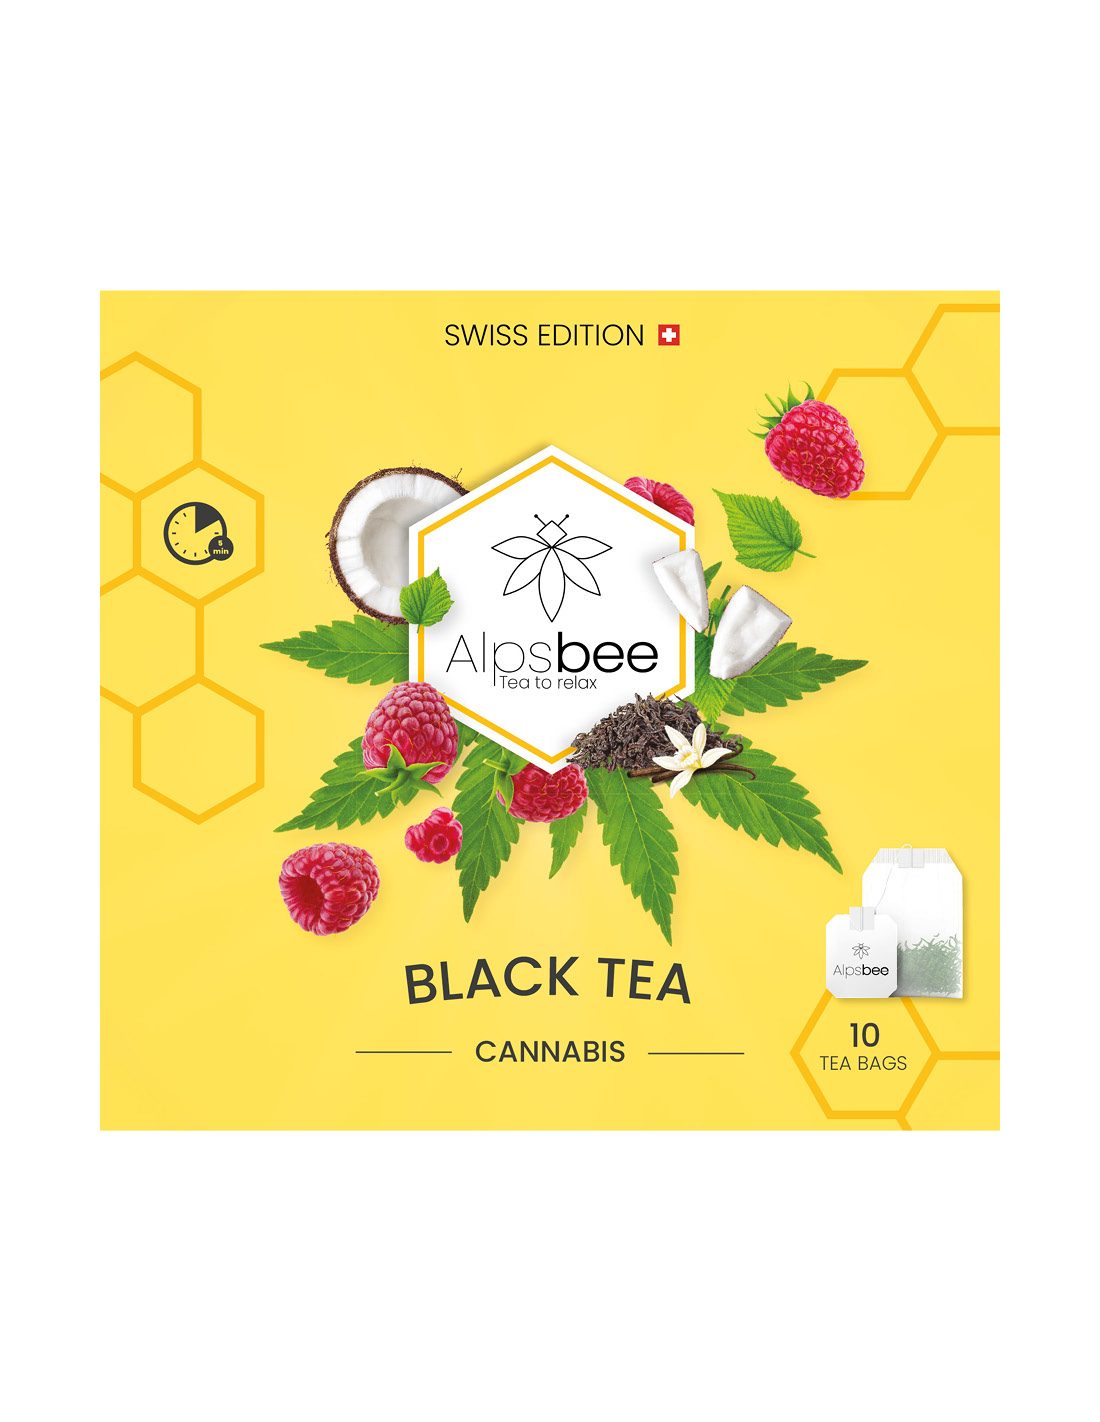 Alpsbee Black Tea, Hemp Teas